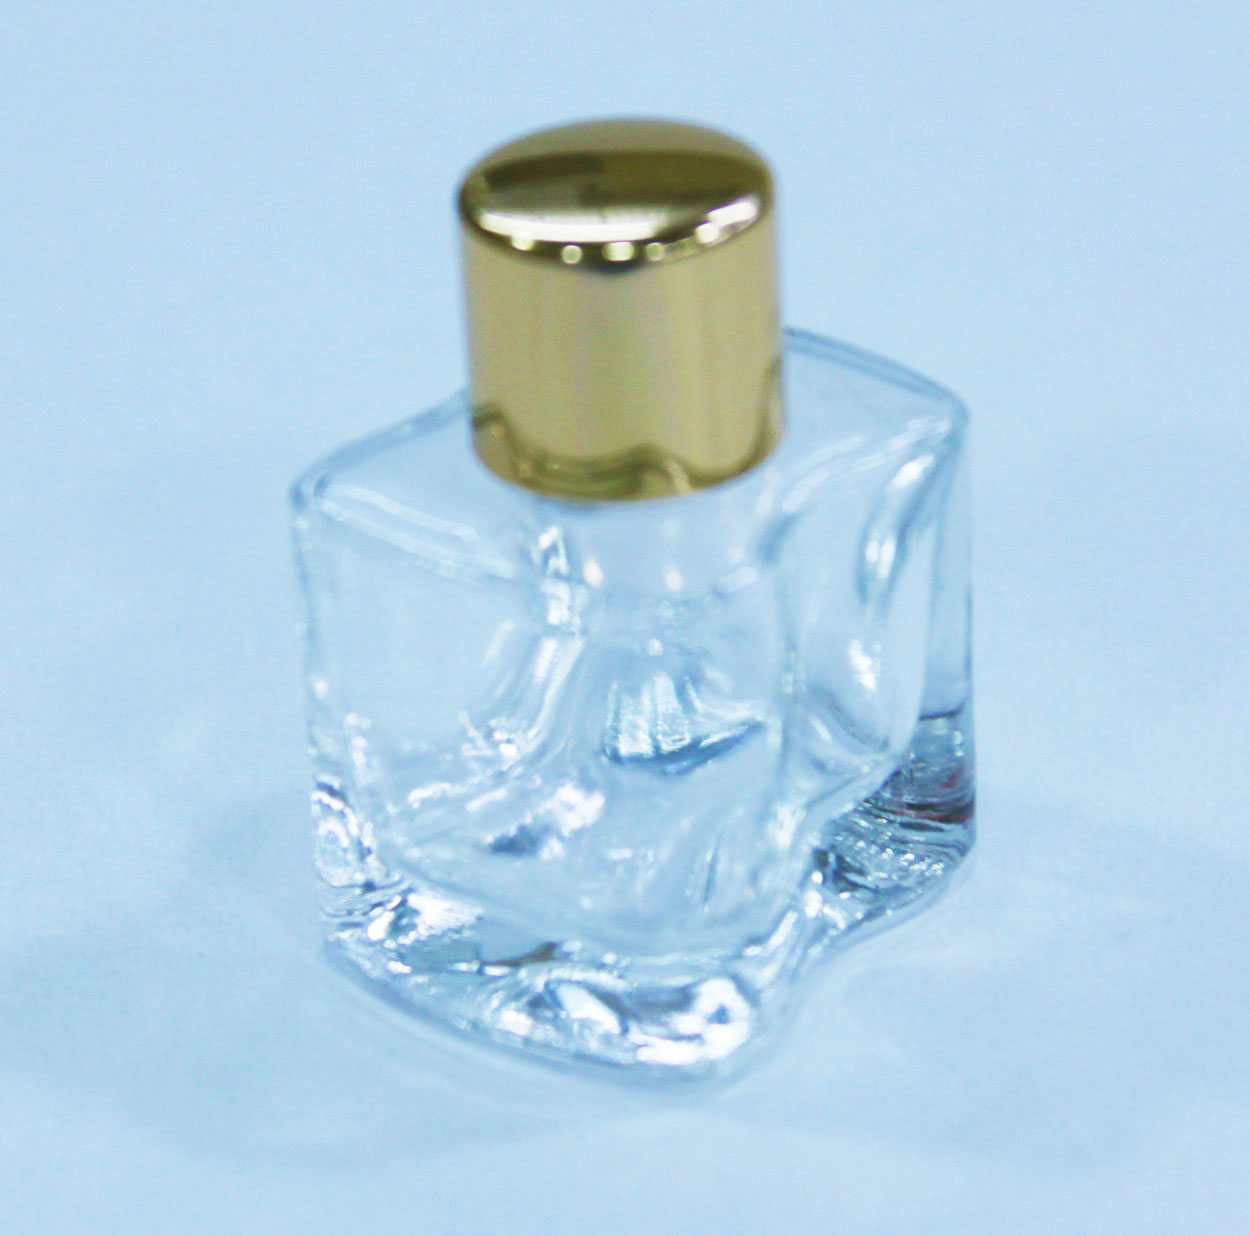 广州市批发订做841平凹香水吊饰瓶厂家供应批发订做841平凹香水吊饰瓶 玻璃香水瓶 精品玻璃瓶